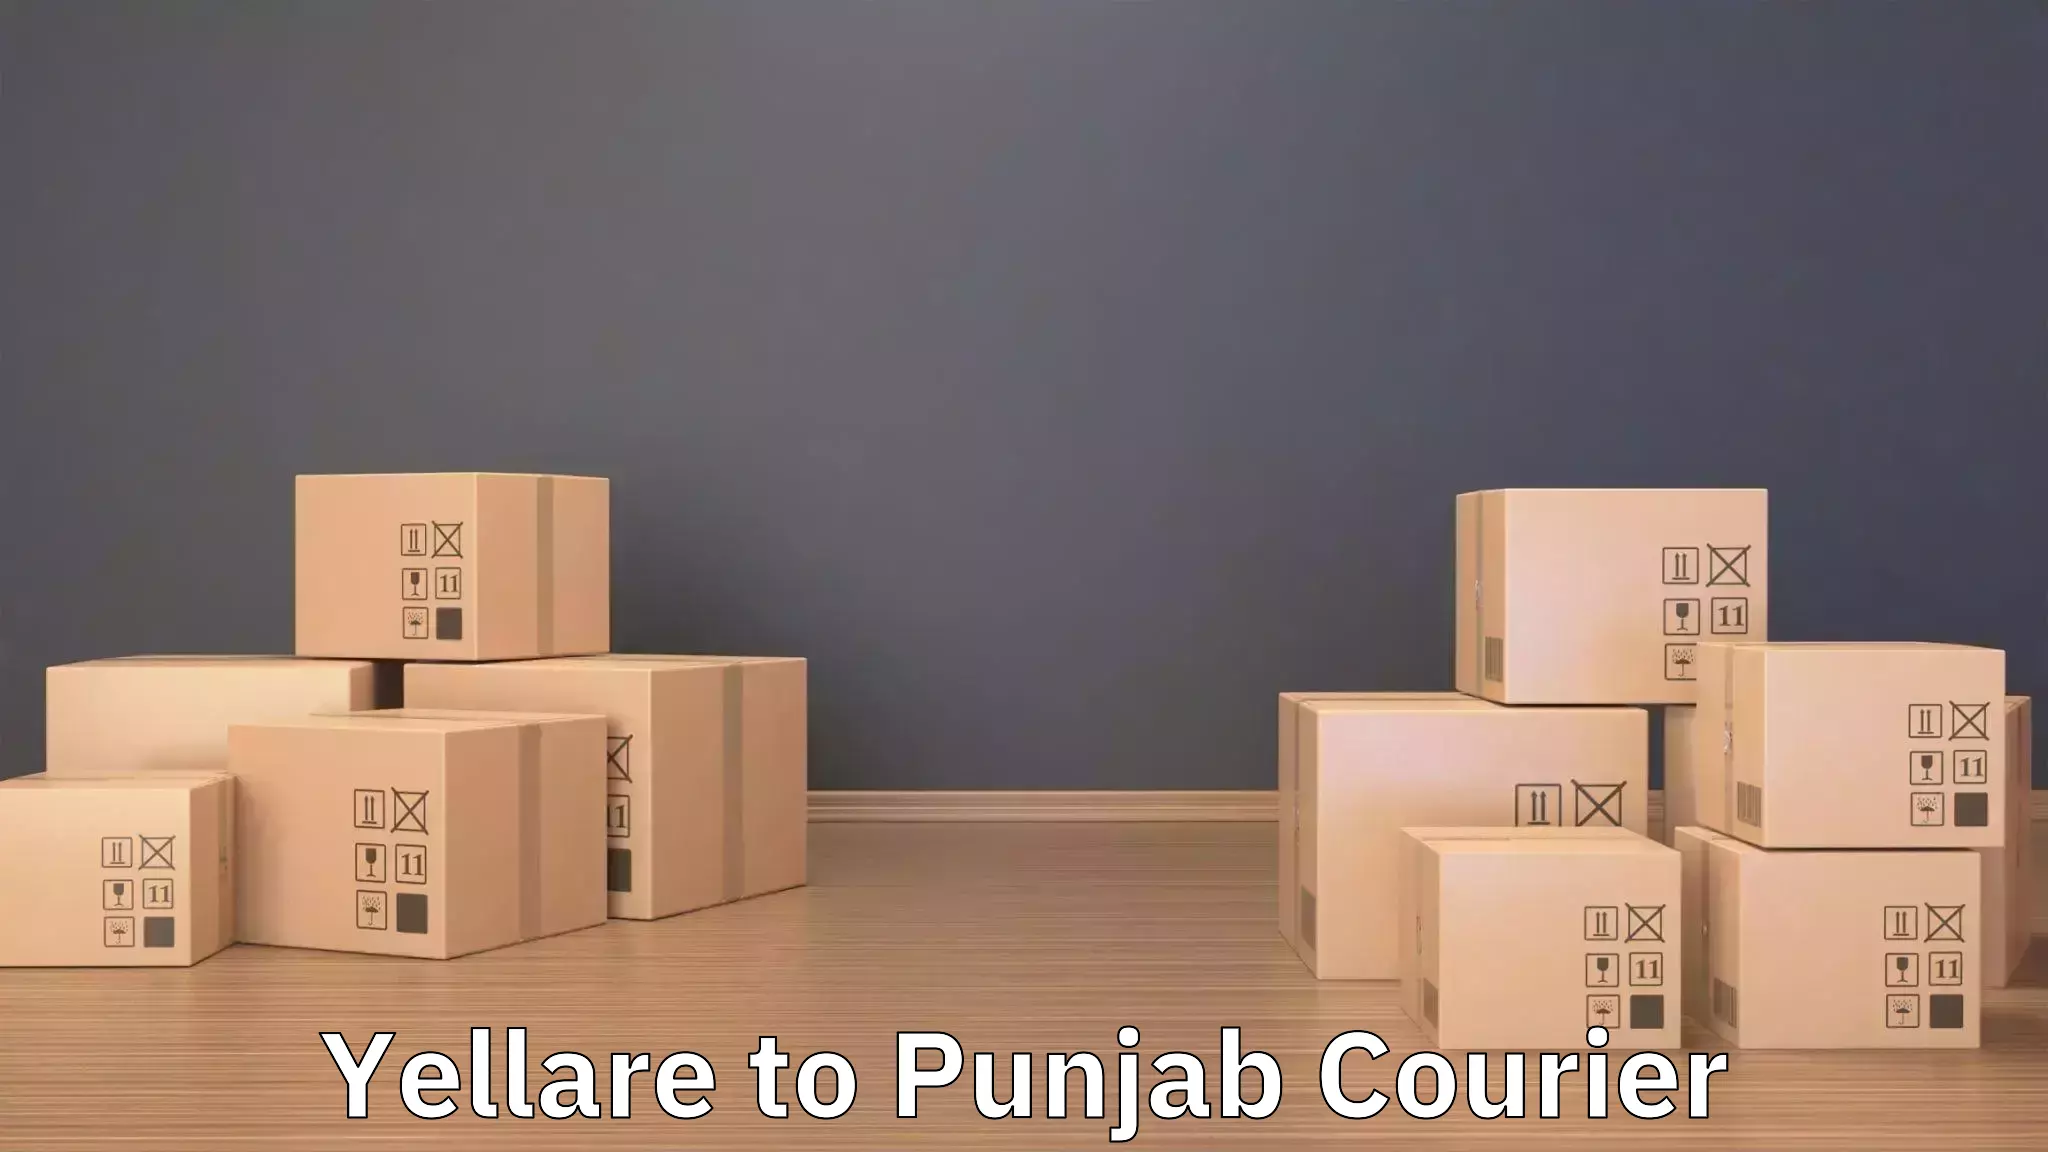 Quick furniture moving in Yellare to Punjab